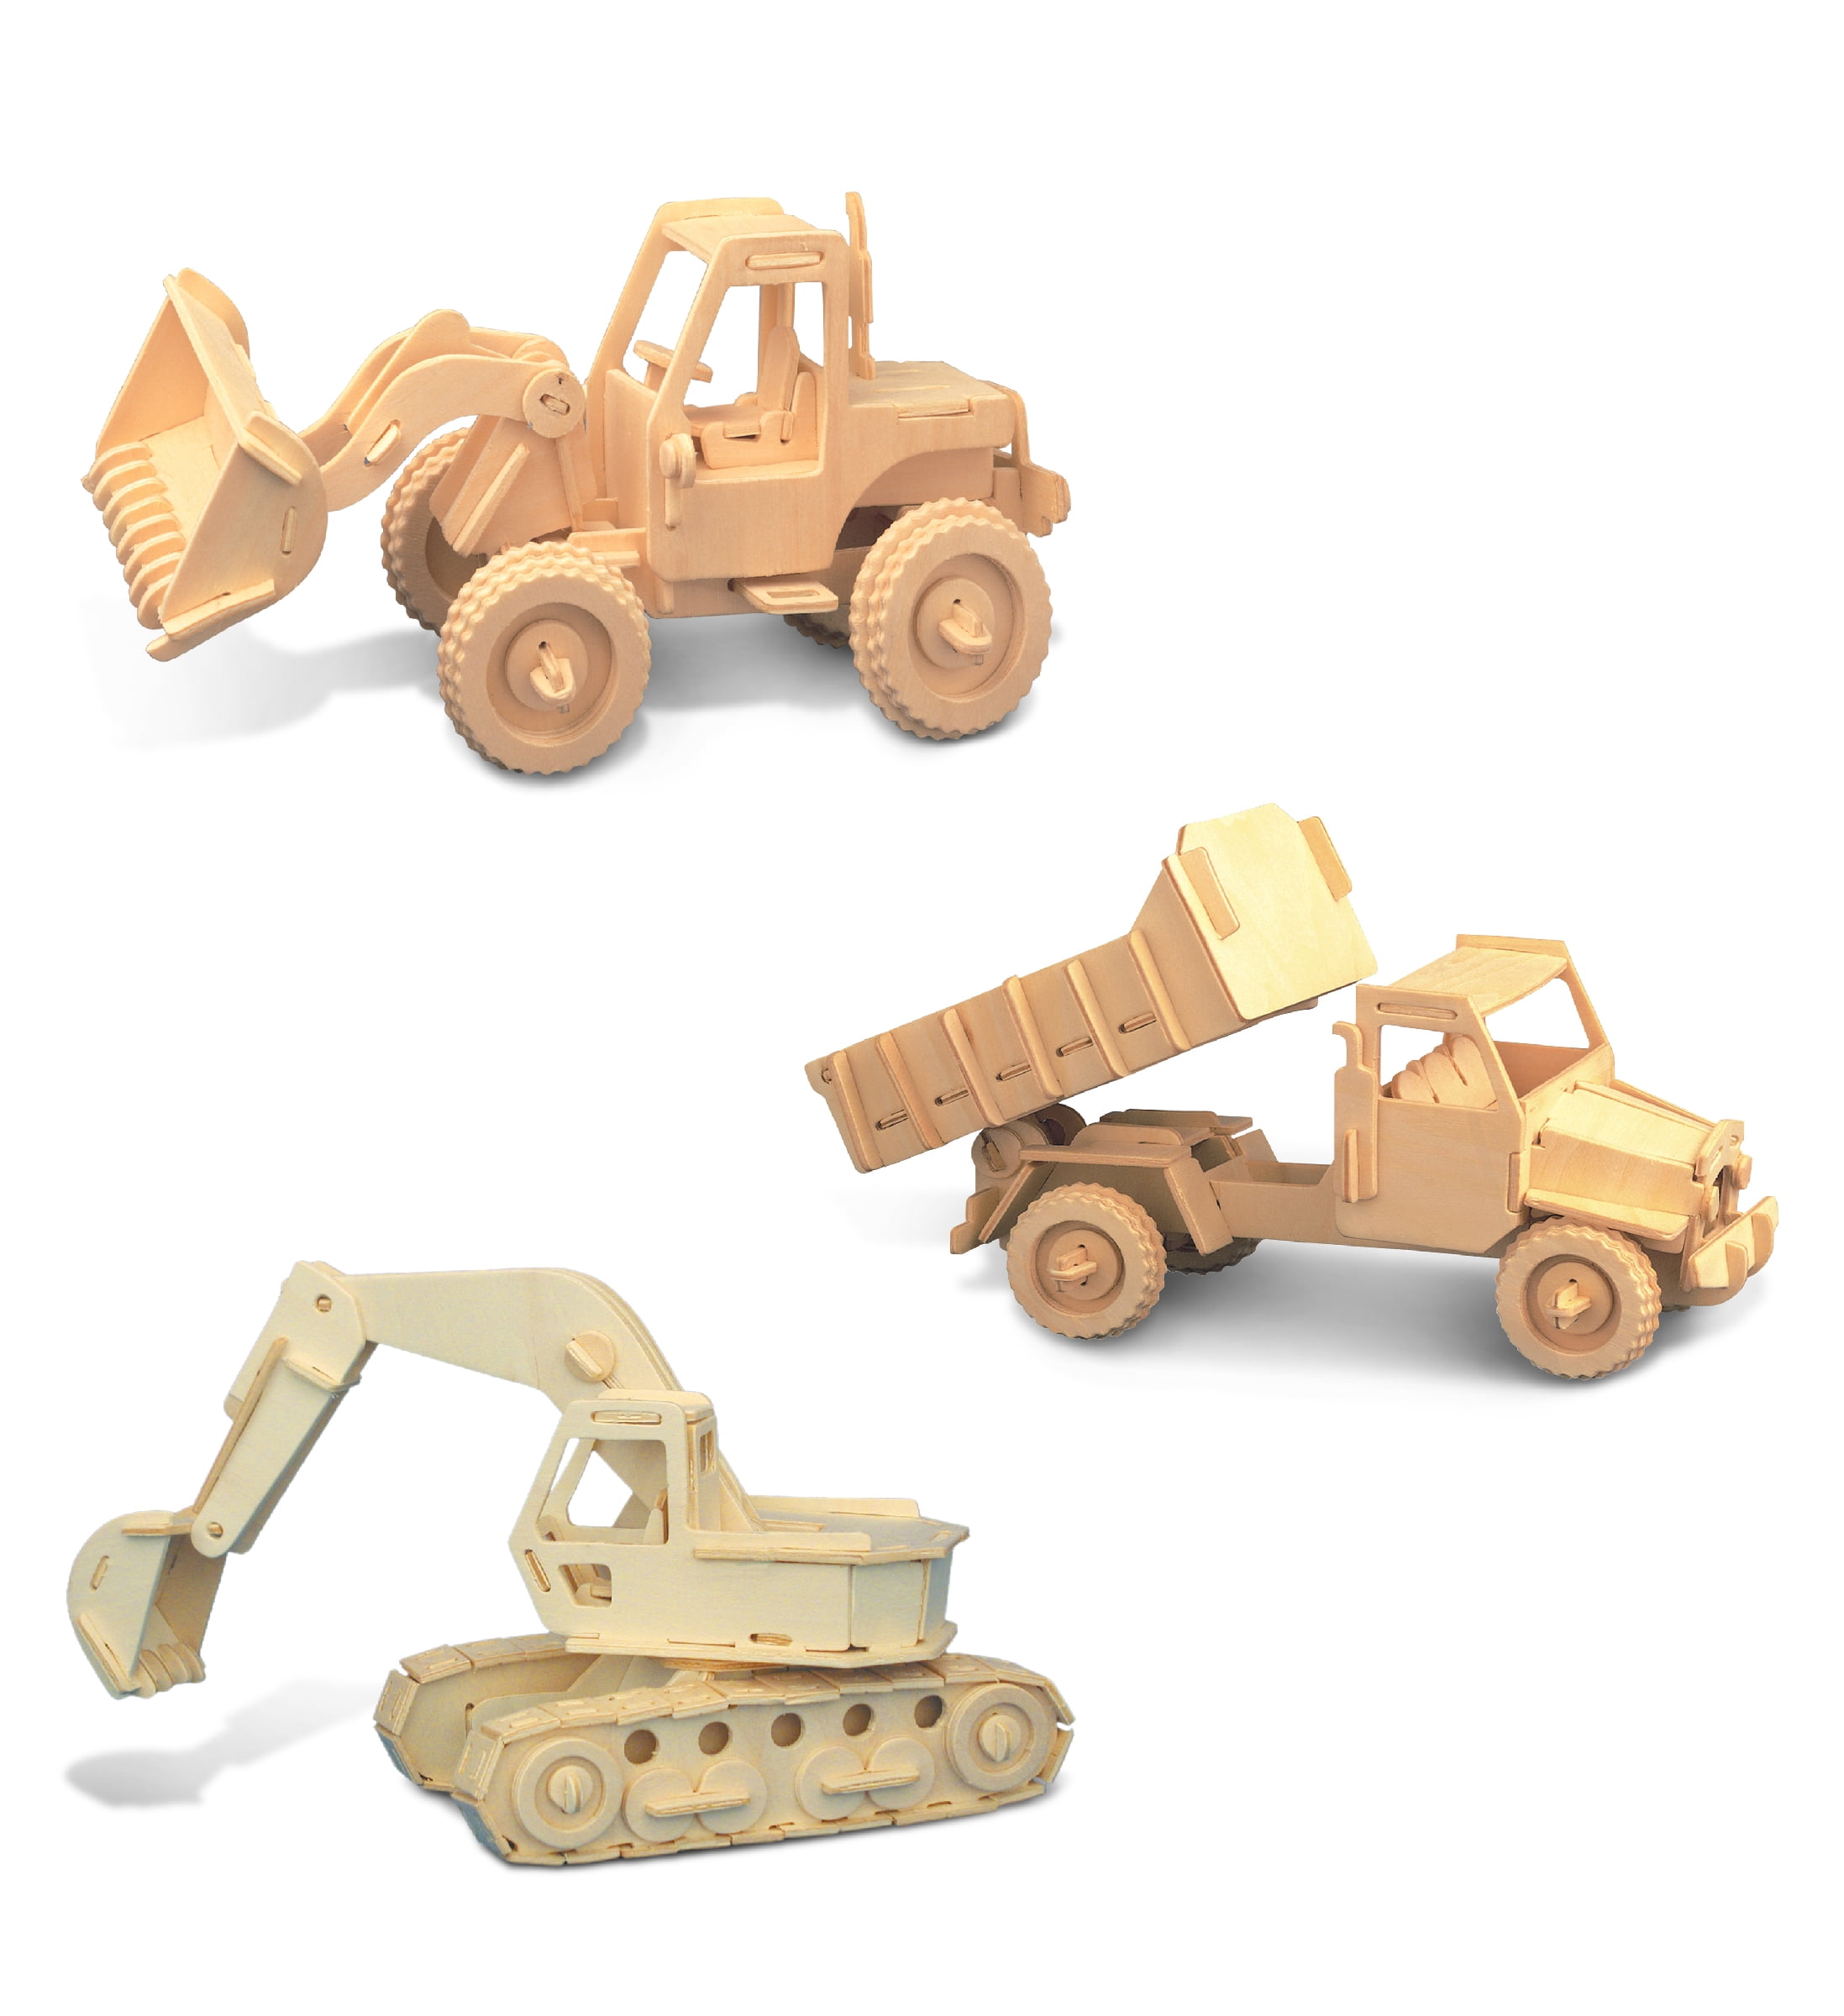 EXCAVATOR 3D Wooden Model Puzzle Construction kit 